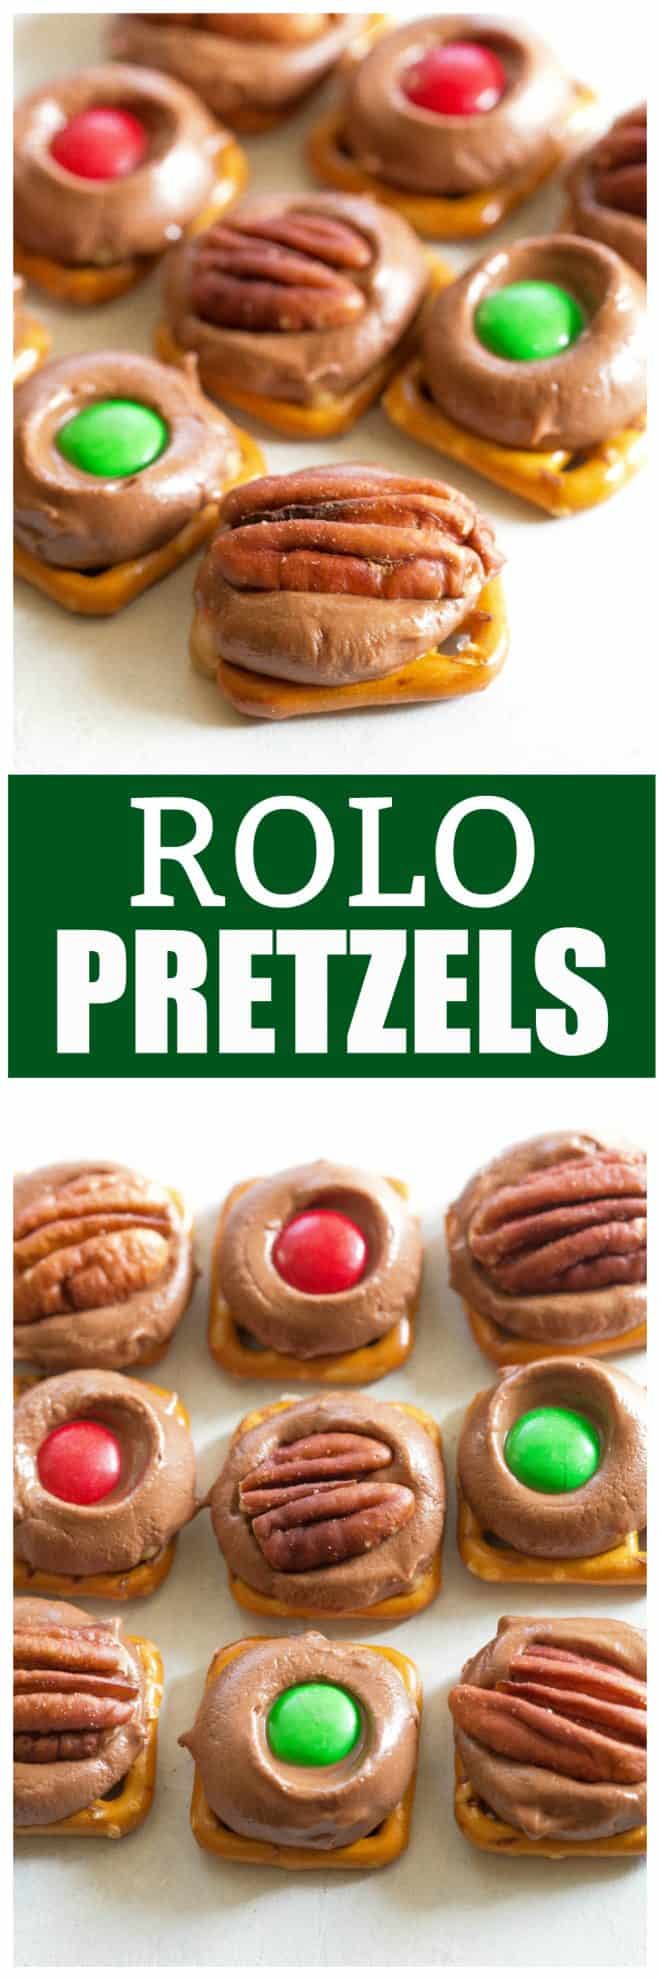 rolo pretzels treats - Rolo Pretzels